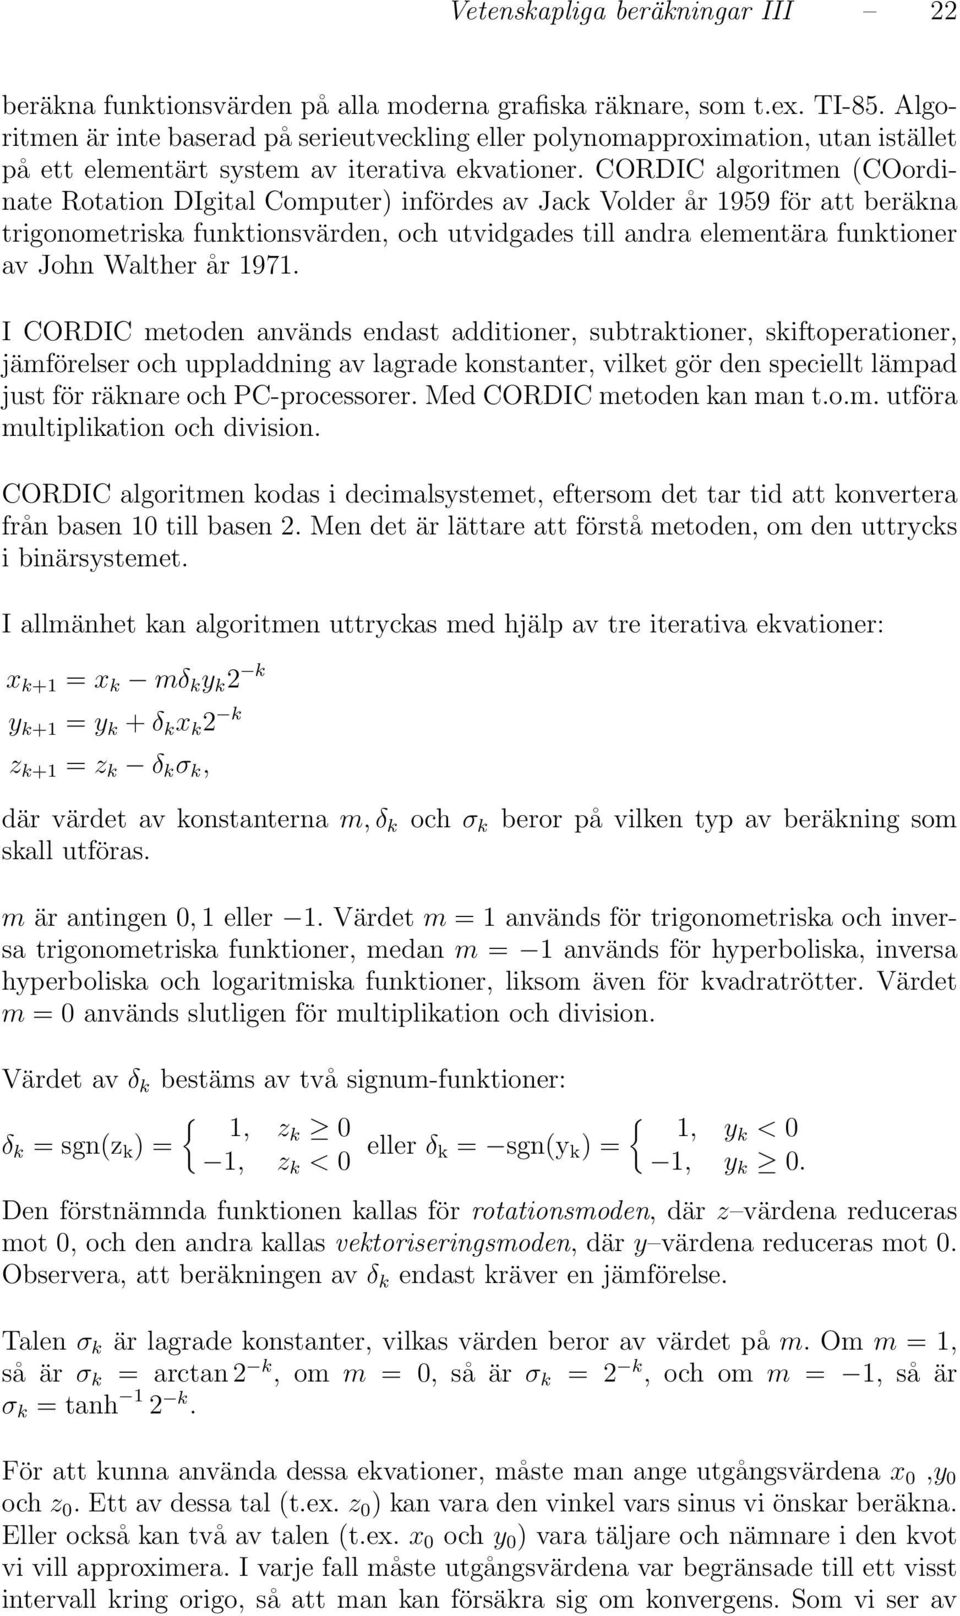 andra elementära funktioner av John Walther år 97 I CORDIC metoden används endast additioner, subtraktioner, skiftoperationer, jämförelser och uppladdning av lagrade konstanter, vilket gör den